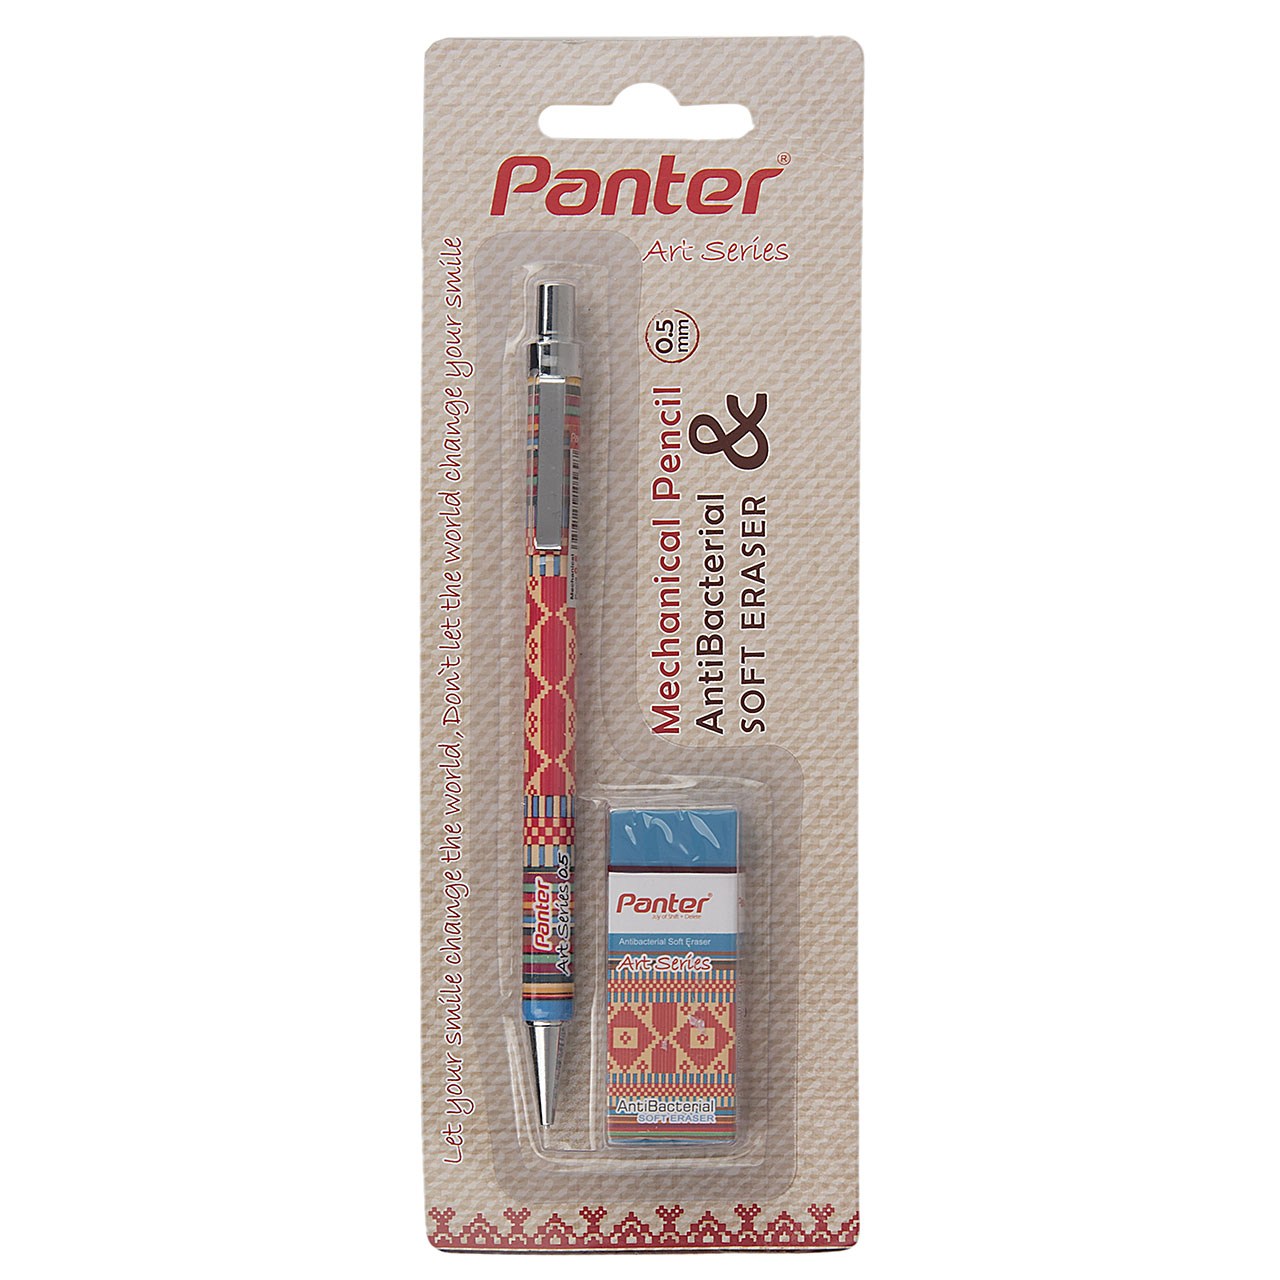 مداد نوکی 0.5 میلی متری پنتر سری Art طرح 5 به همراه پاک کن